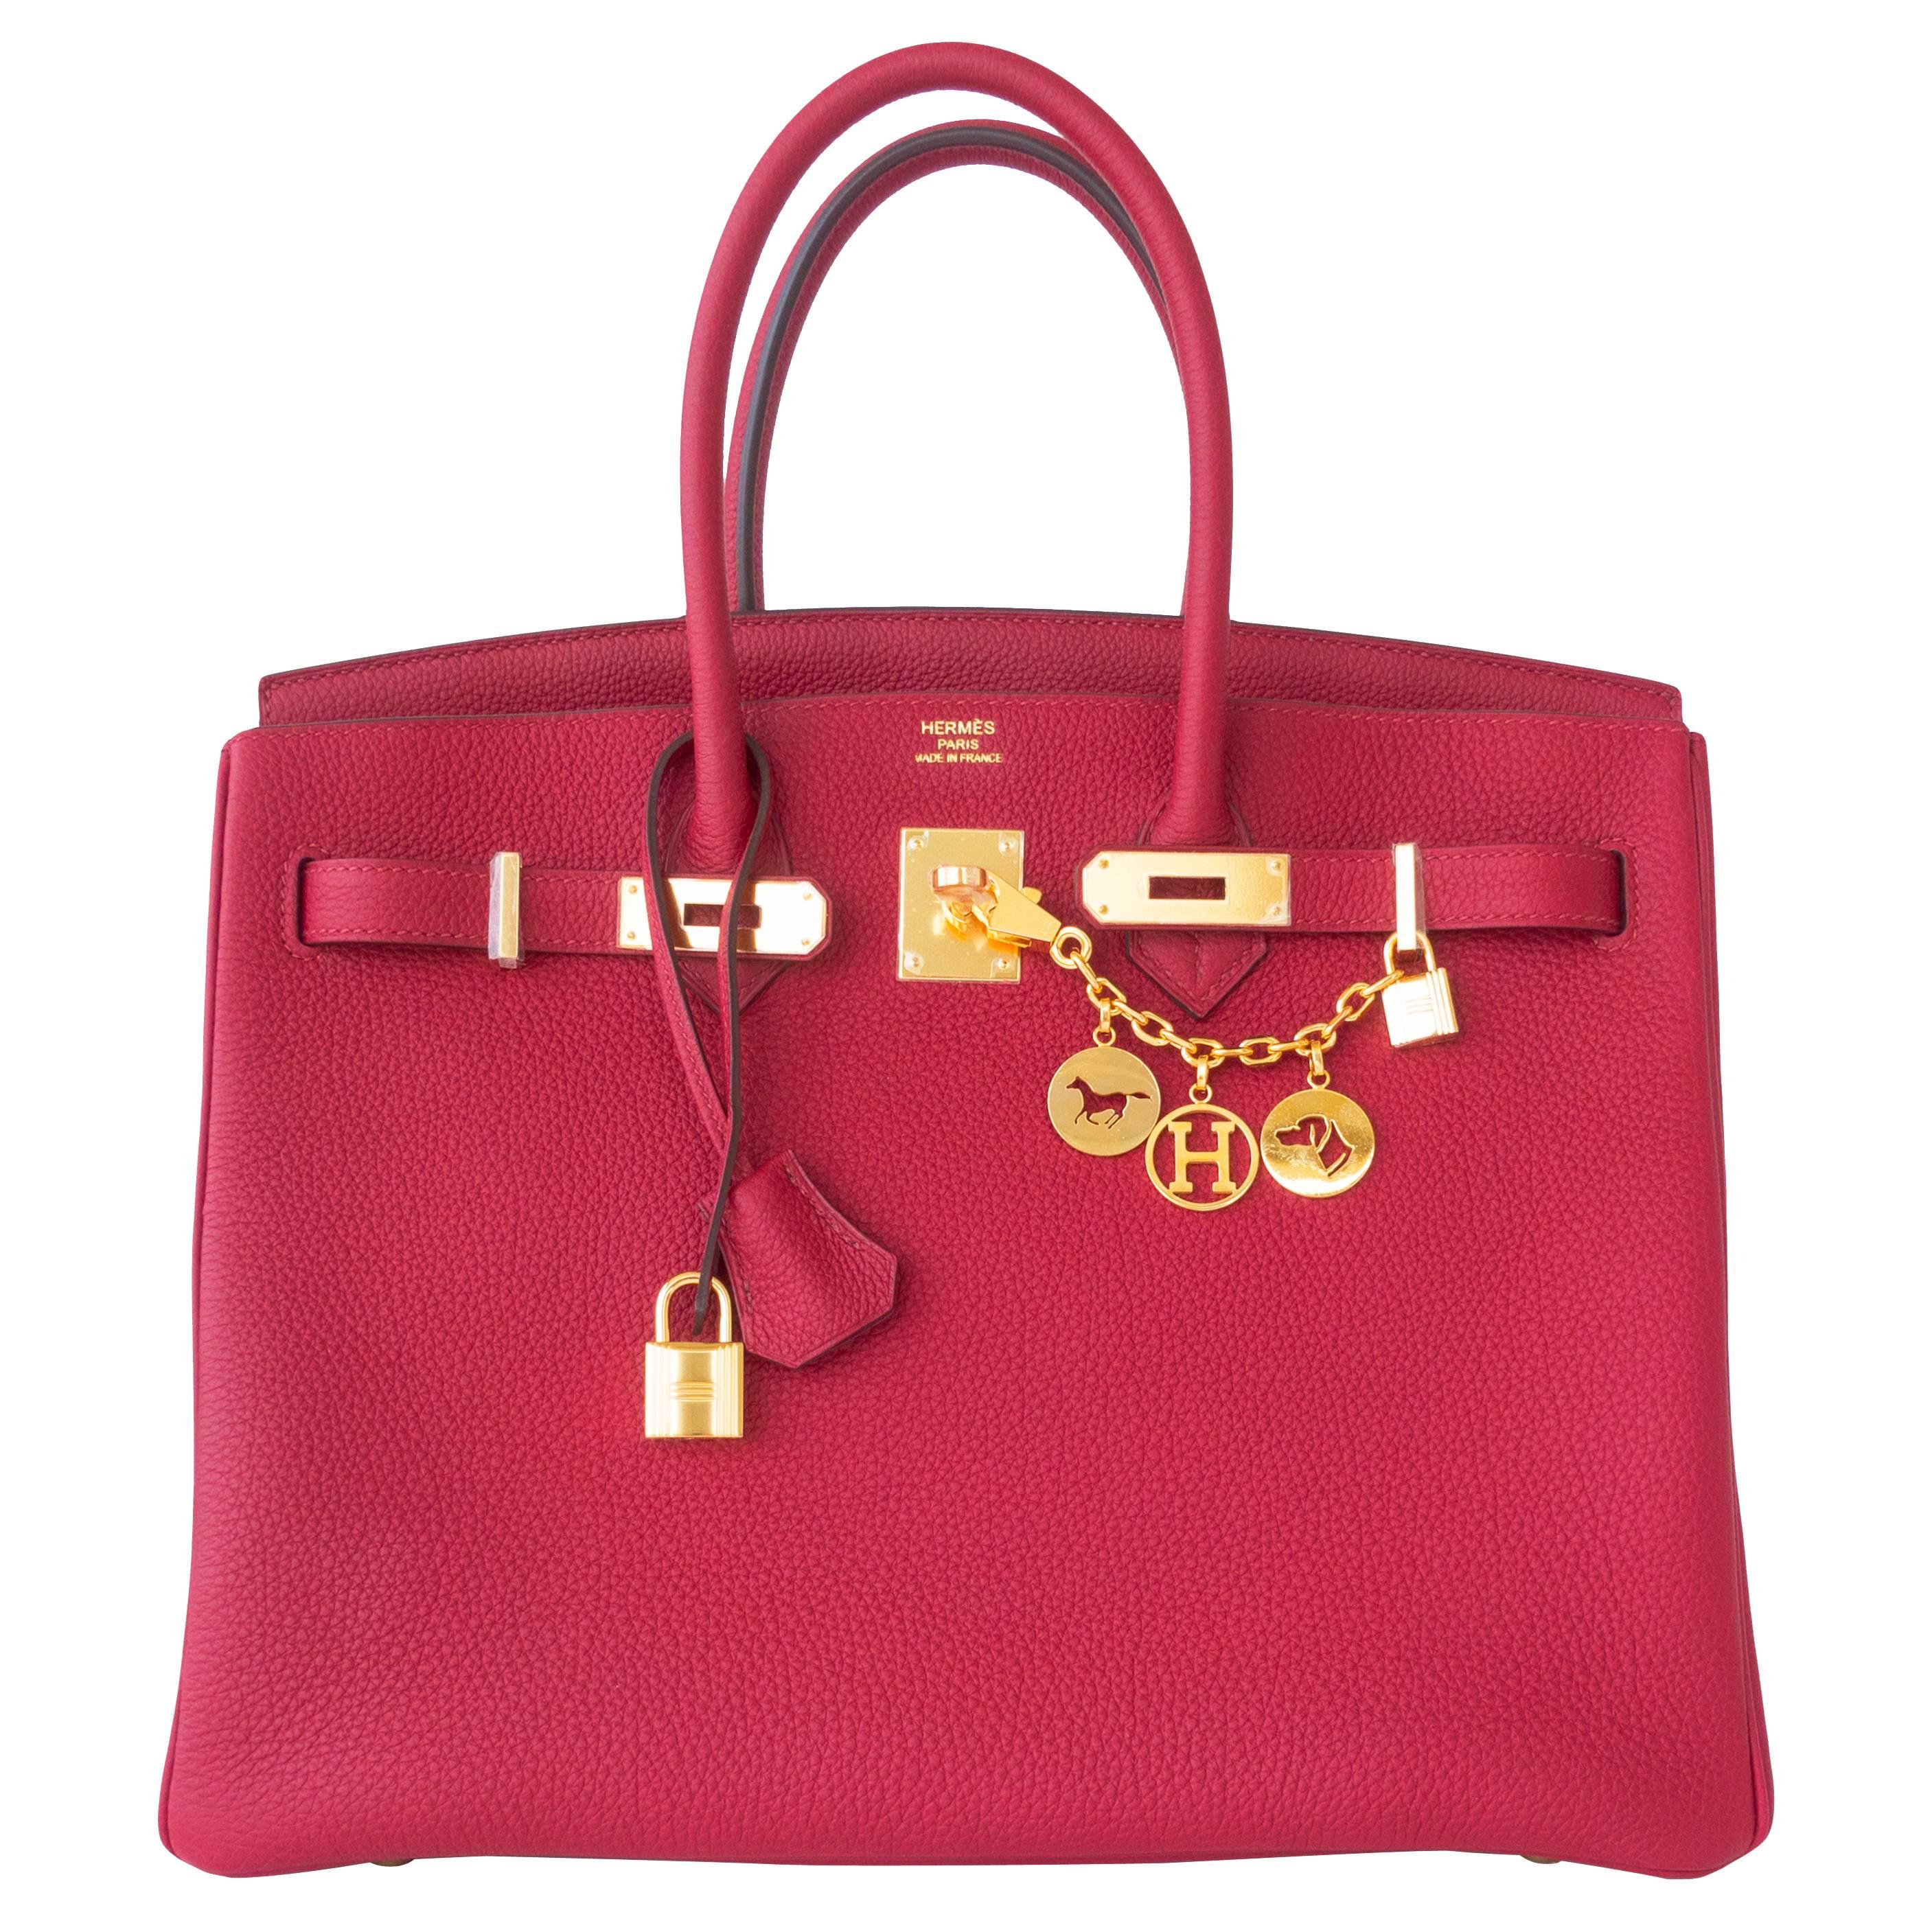 Hermes Rouge Grenat Togo Garnet Red 35cm Birkin Bag Gold Hardware GHW Exquisite